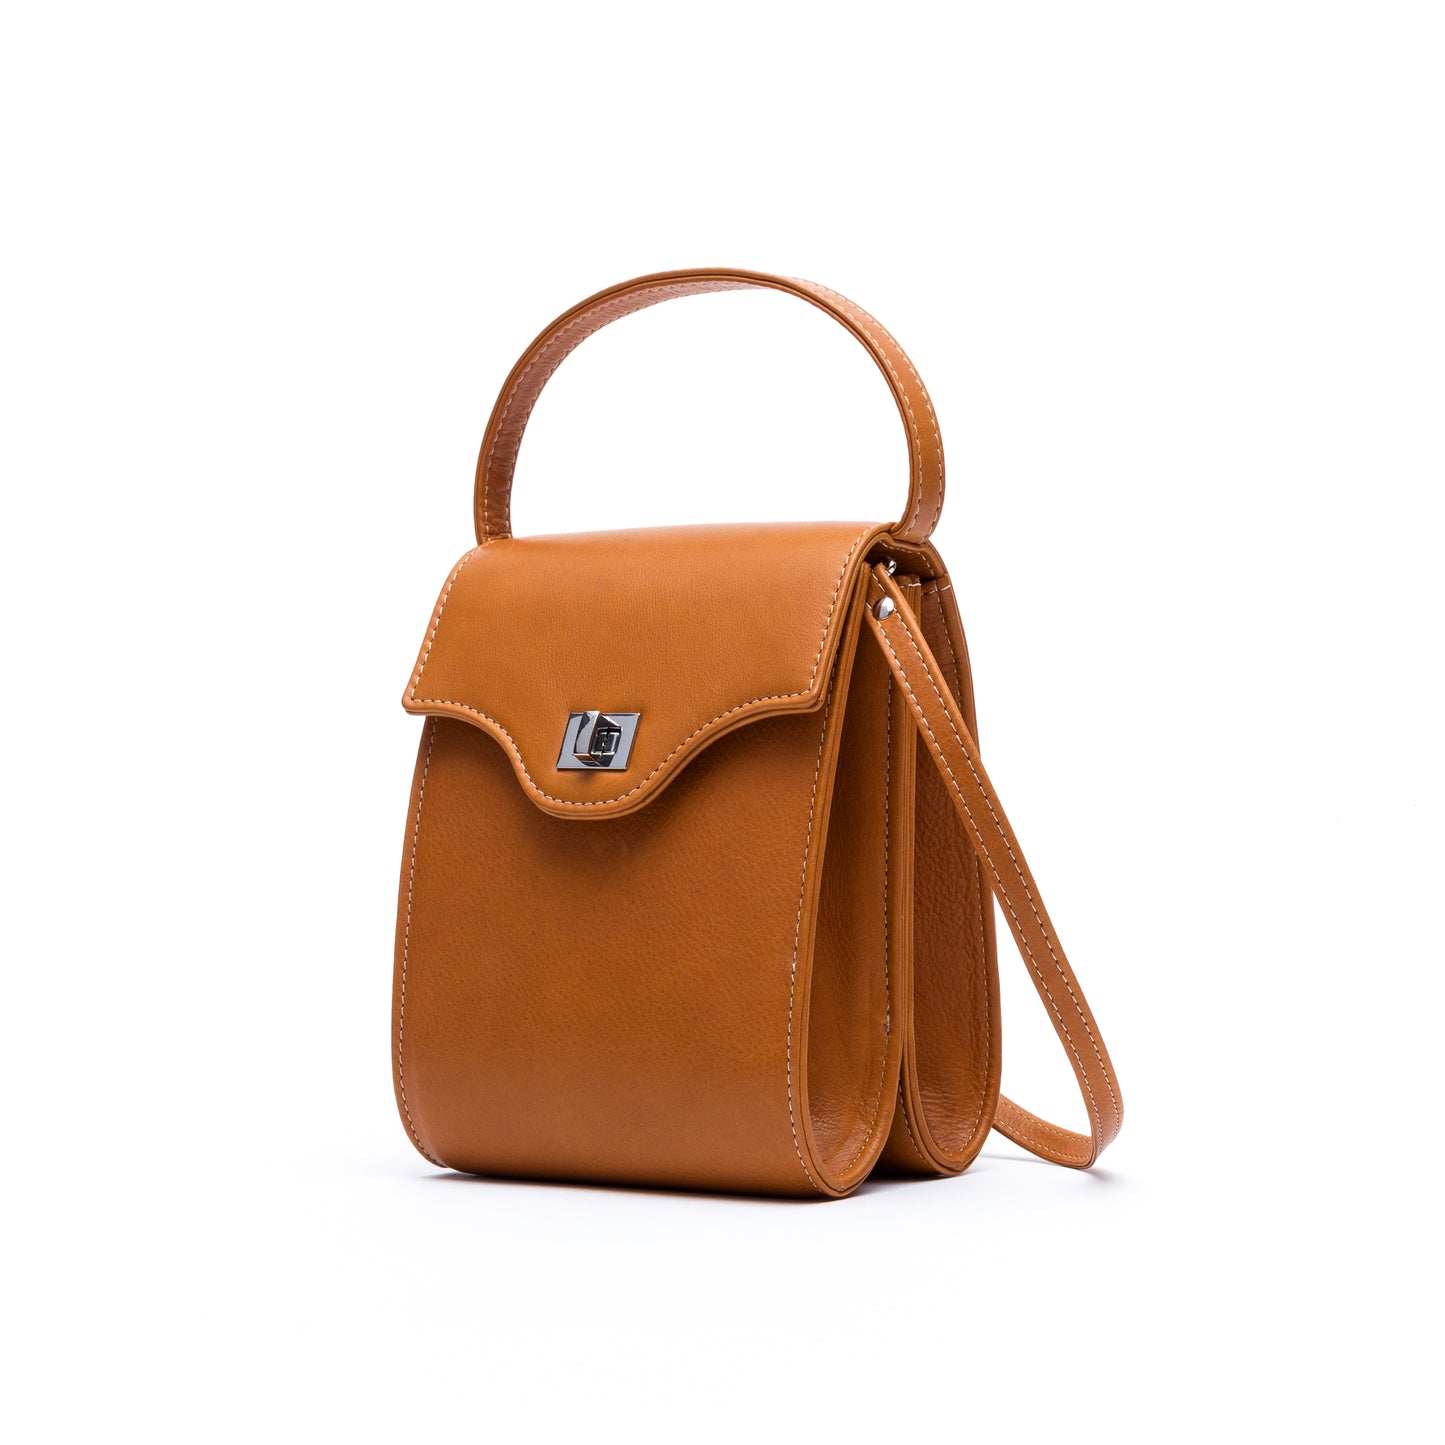 Cucci- Camel Leather Bag